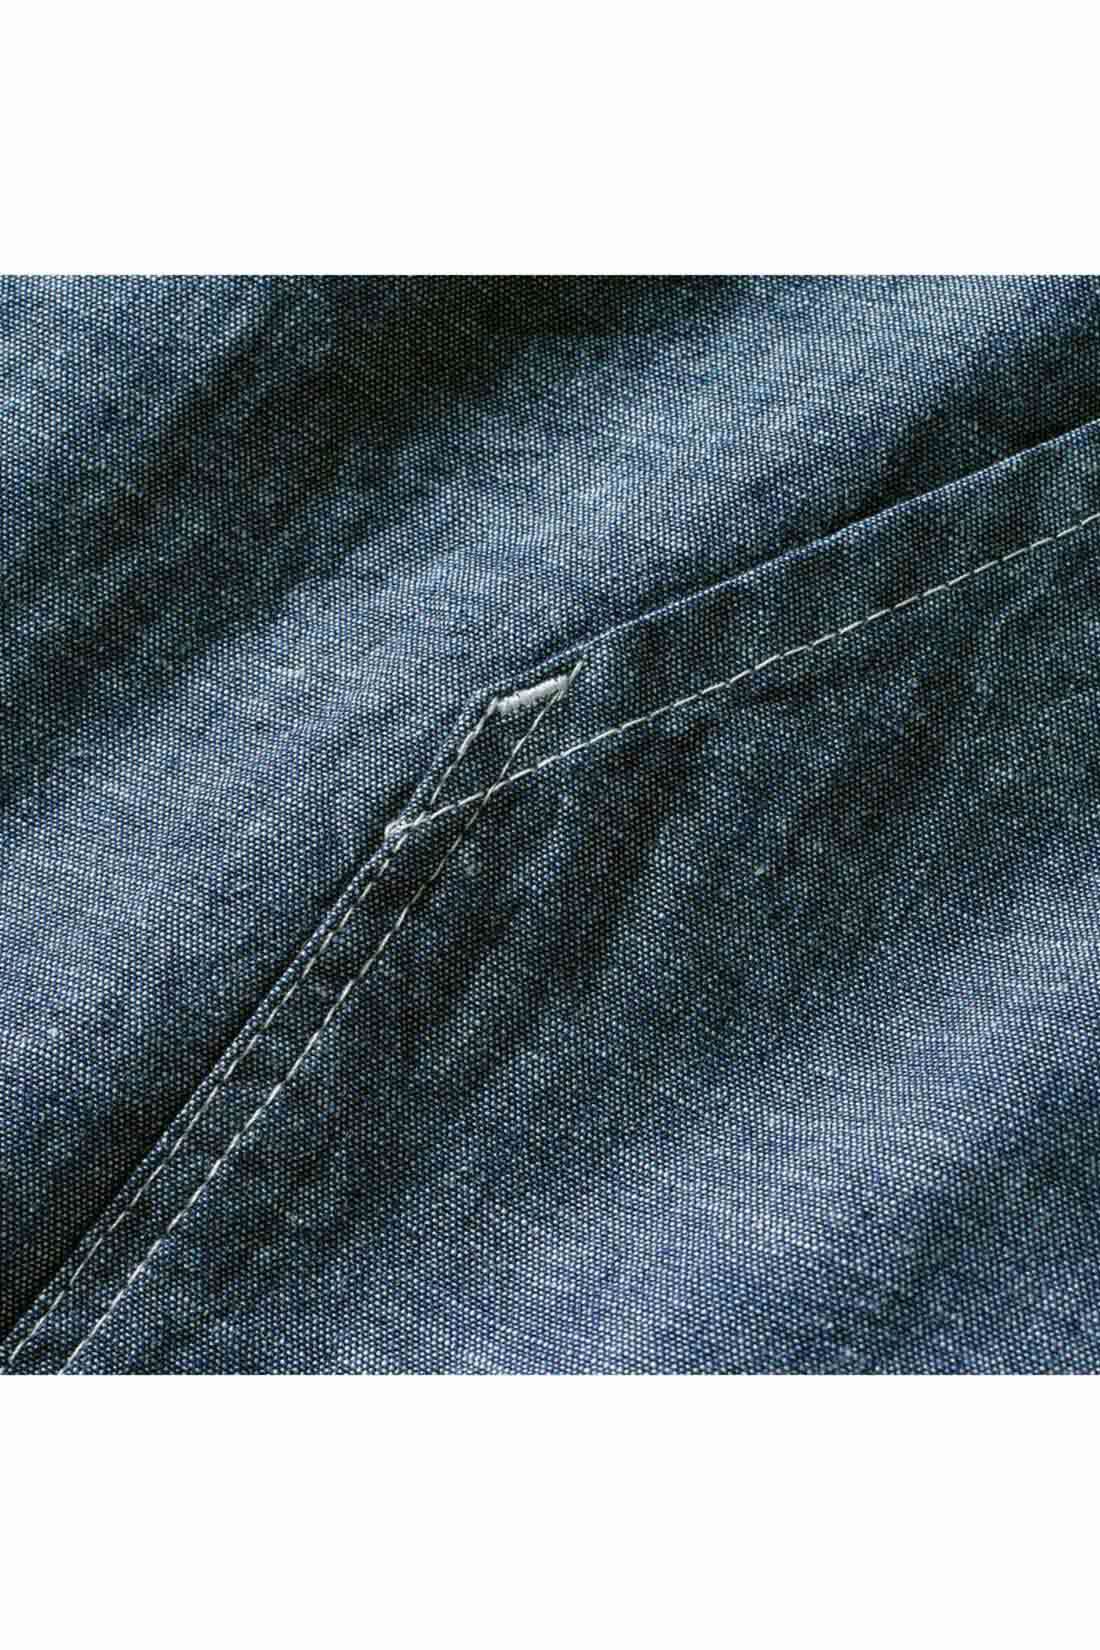 THREE FIFTY STANDARD|THREE FIFTY STANDARD シャンブレーのシャツジャケット|オーガニックコットンの日本製インディゴシャンブレー生地を使用。